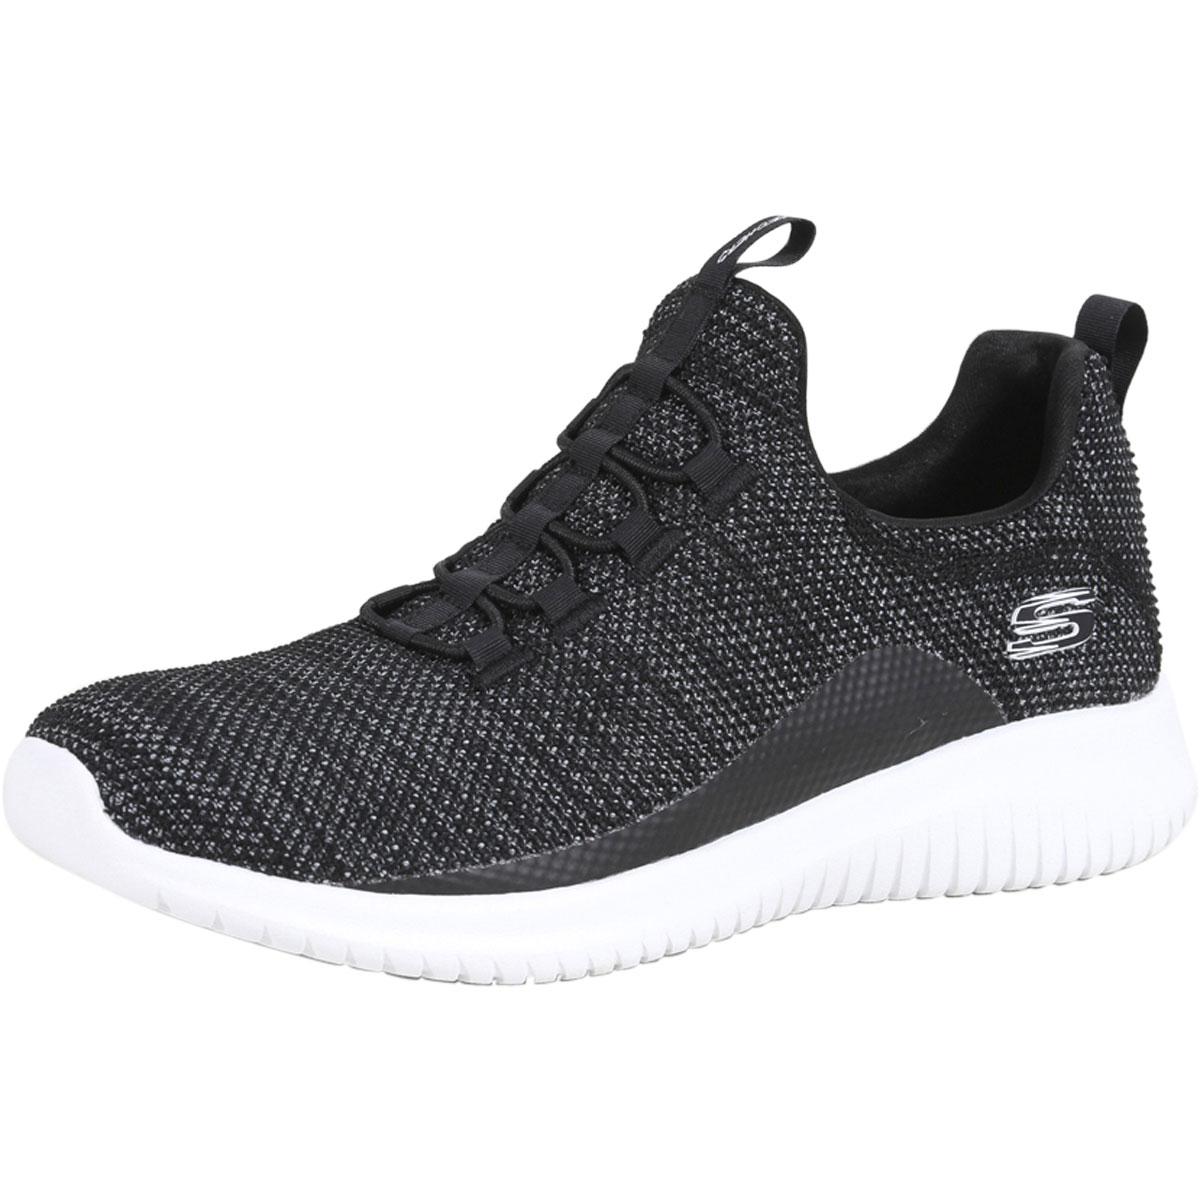 Skechers Women's Ultra Flex Capsule Memory Foam Sneakers Shoes - Black/White - 7.5 B(M) US